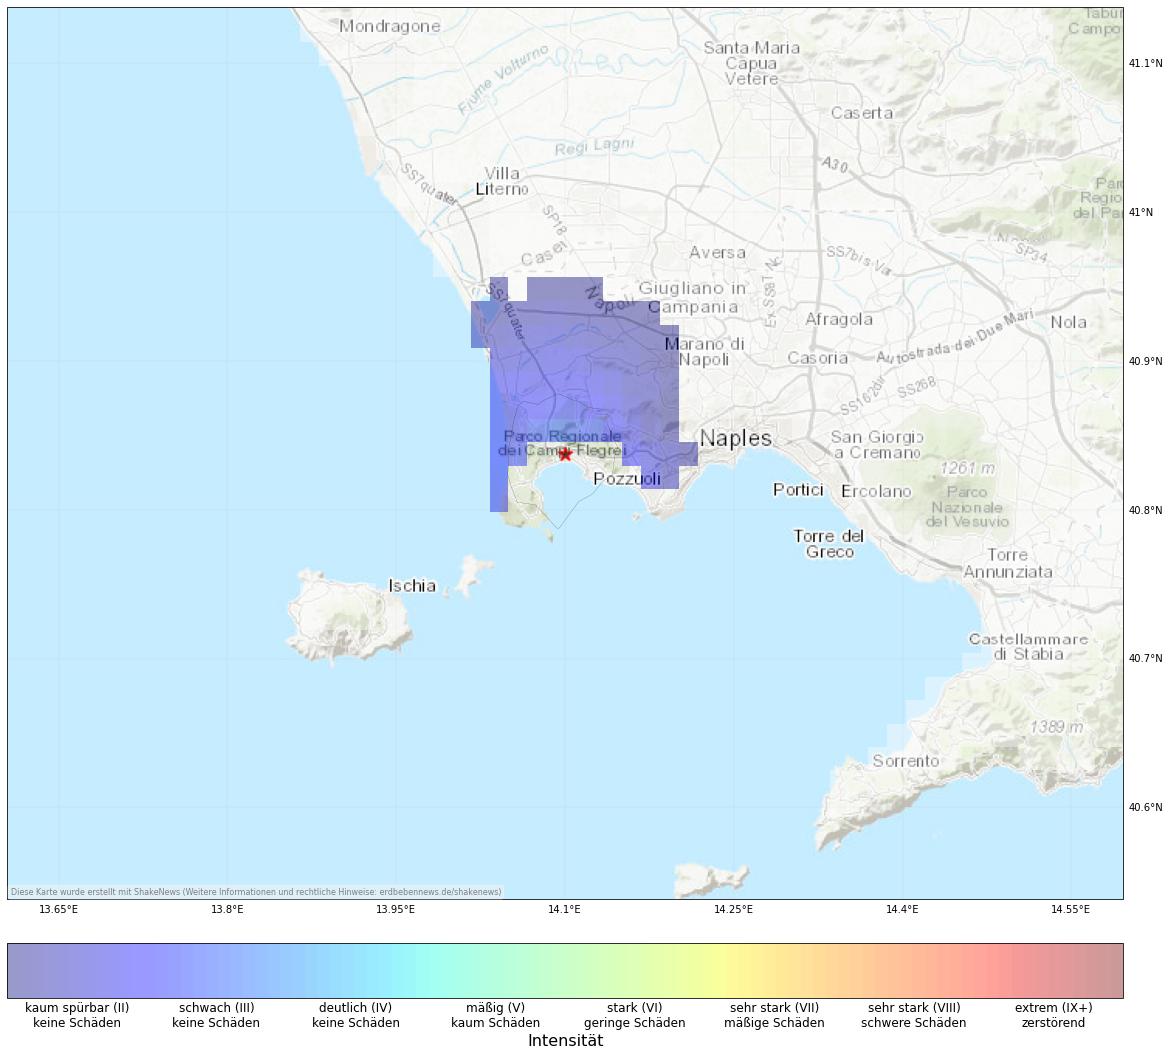 Berechnete Intensität (ShakeMap) des Erdbebens der Stärke 2.6 am 15. August, 00:46 Uhr in Italien